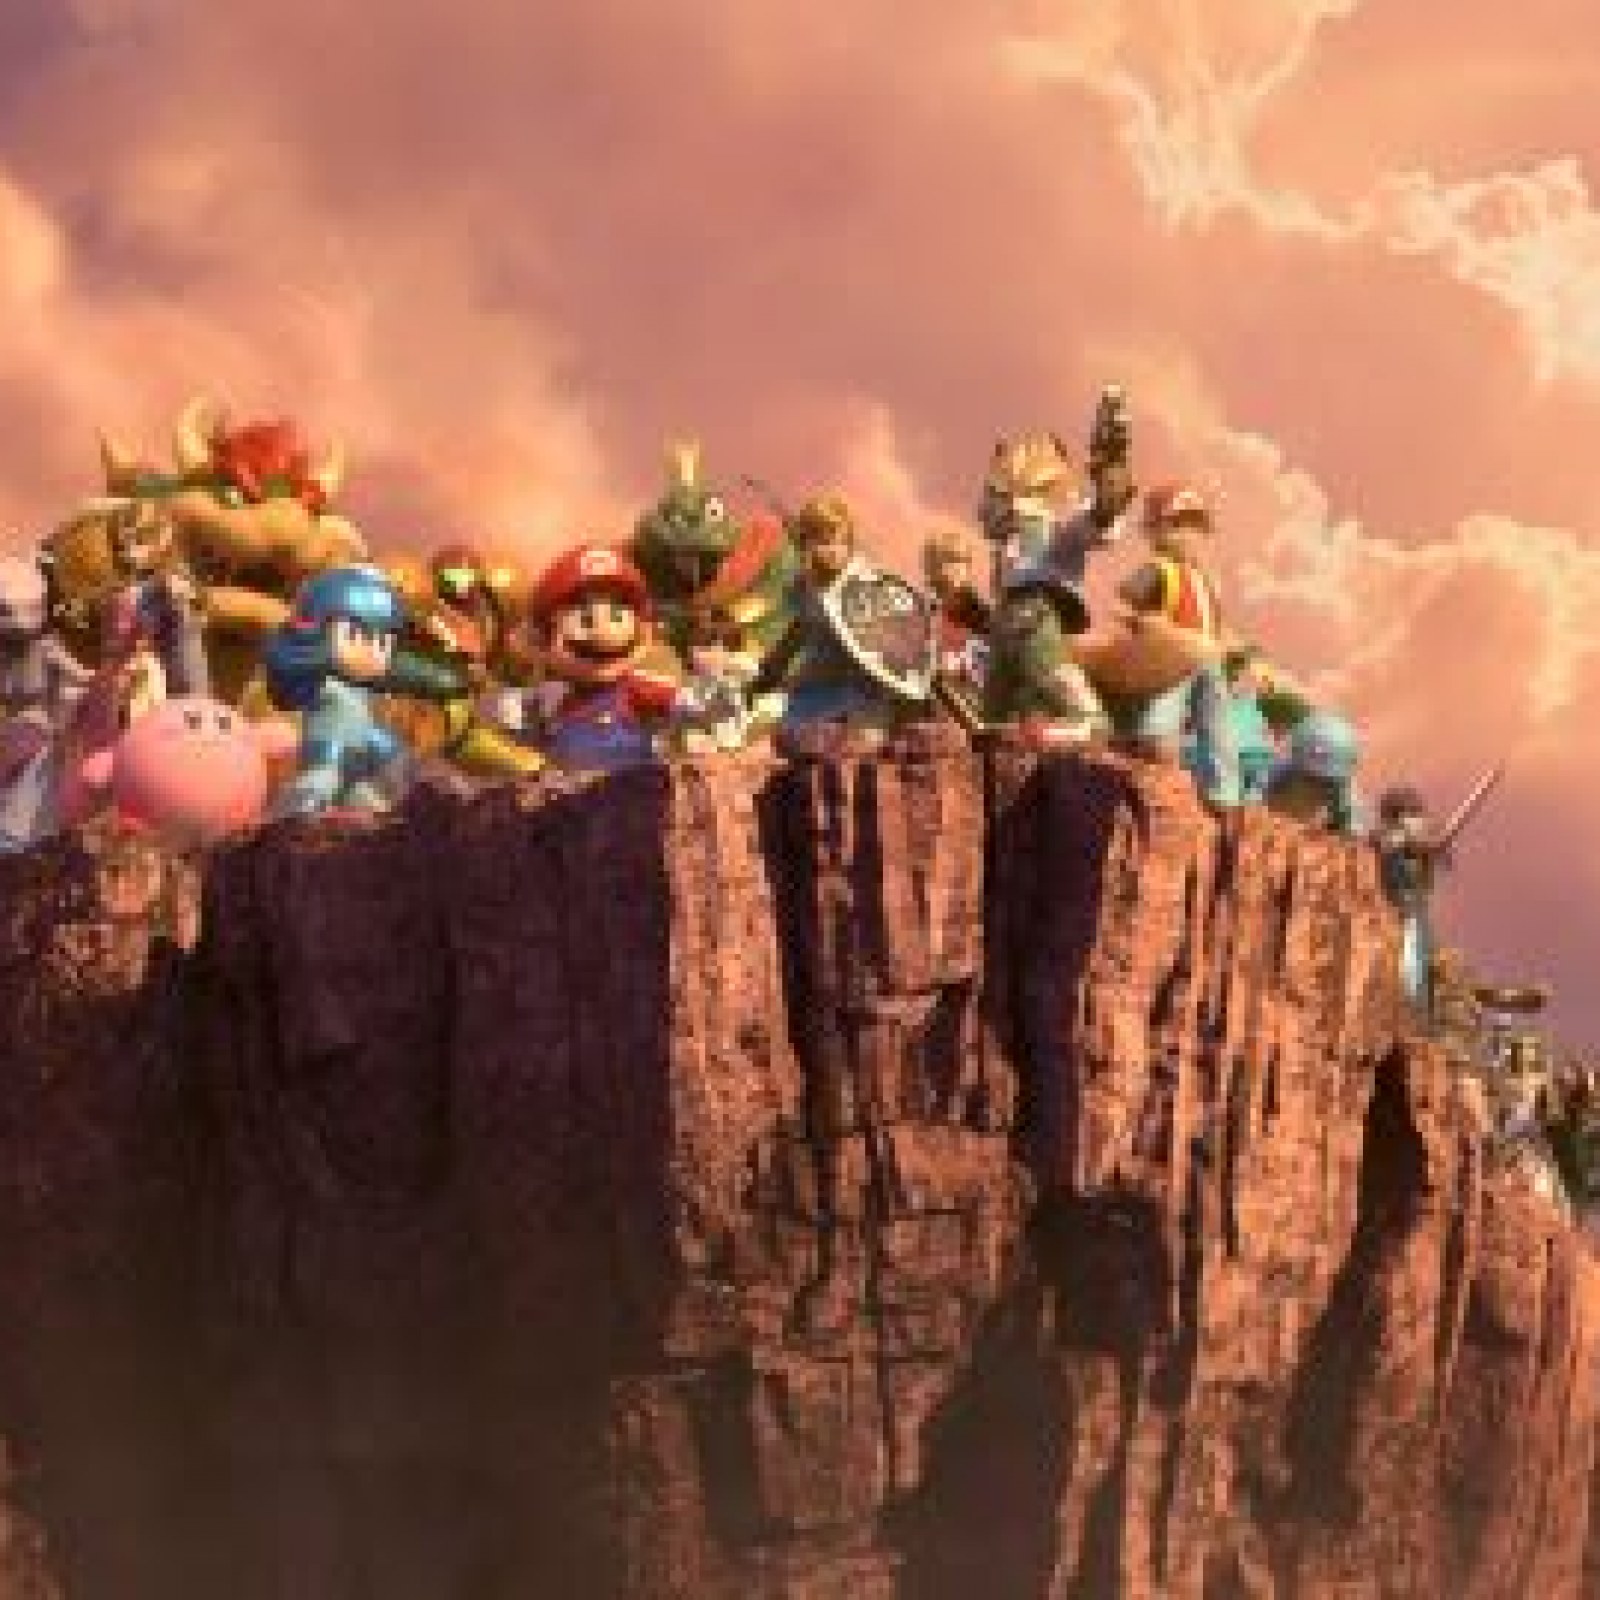 Dårlig faktor træk vejret filosofi Super Smash Bros. Ultimate' World of Light Story Mode: Everything We Know